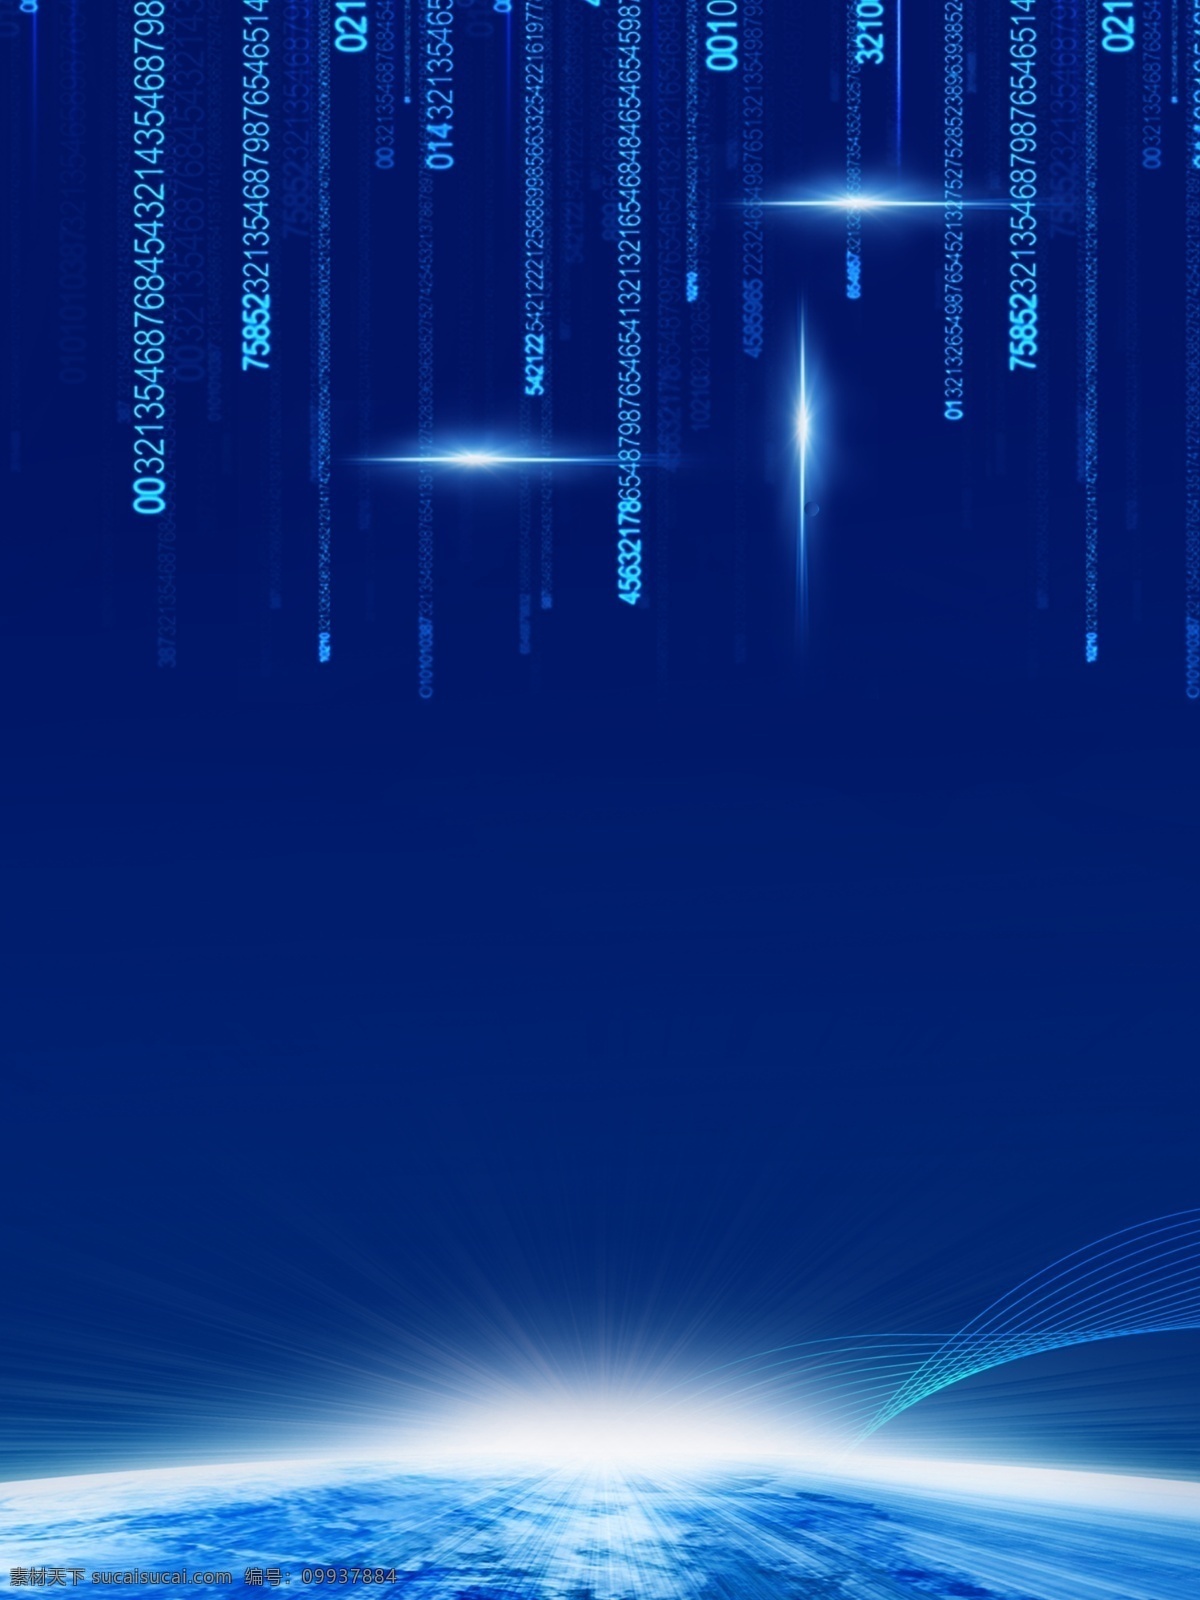 蓝色 简约 数据 智能 科技 背景 蓝色背景 动感 背景素材 数据信息 信息技术 数据素材 人工智能 立体 发光 网格 广告背景 广告背景素材